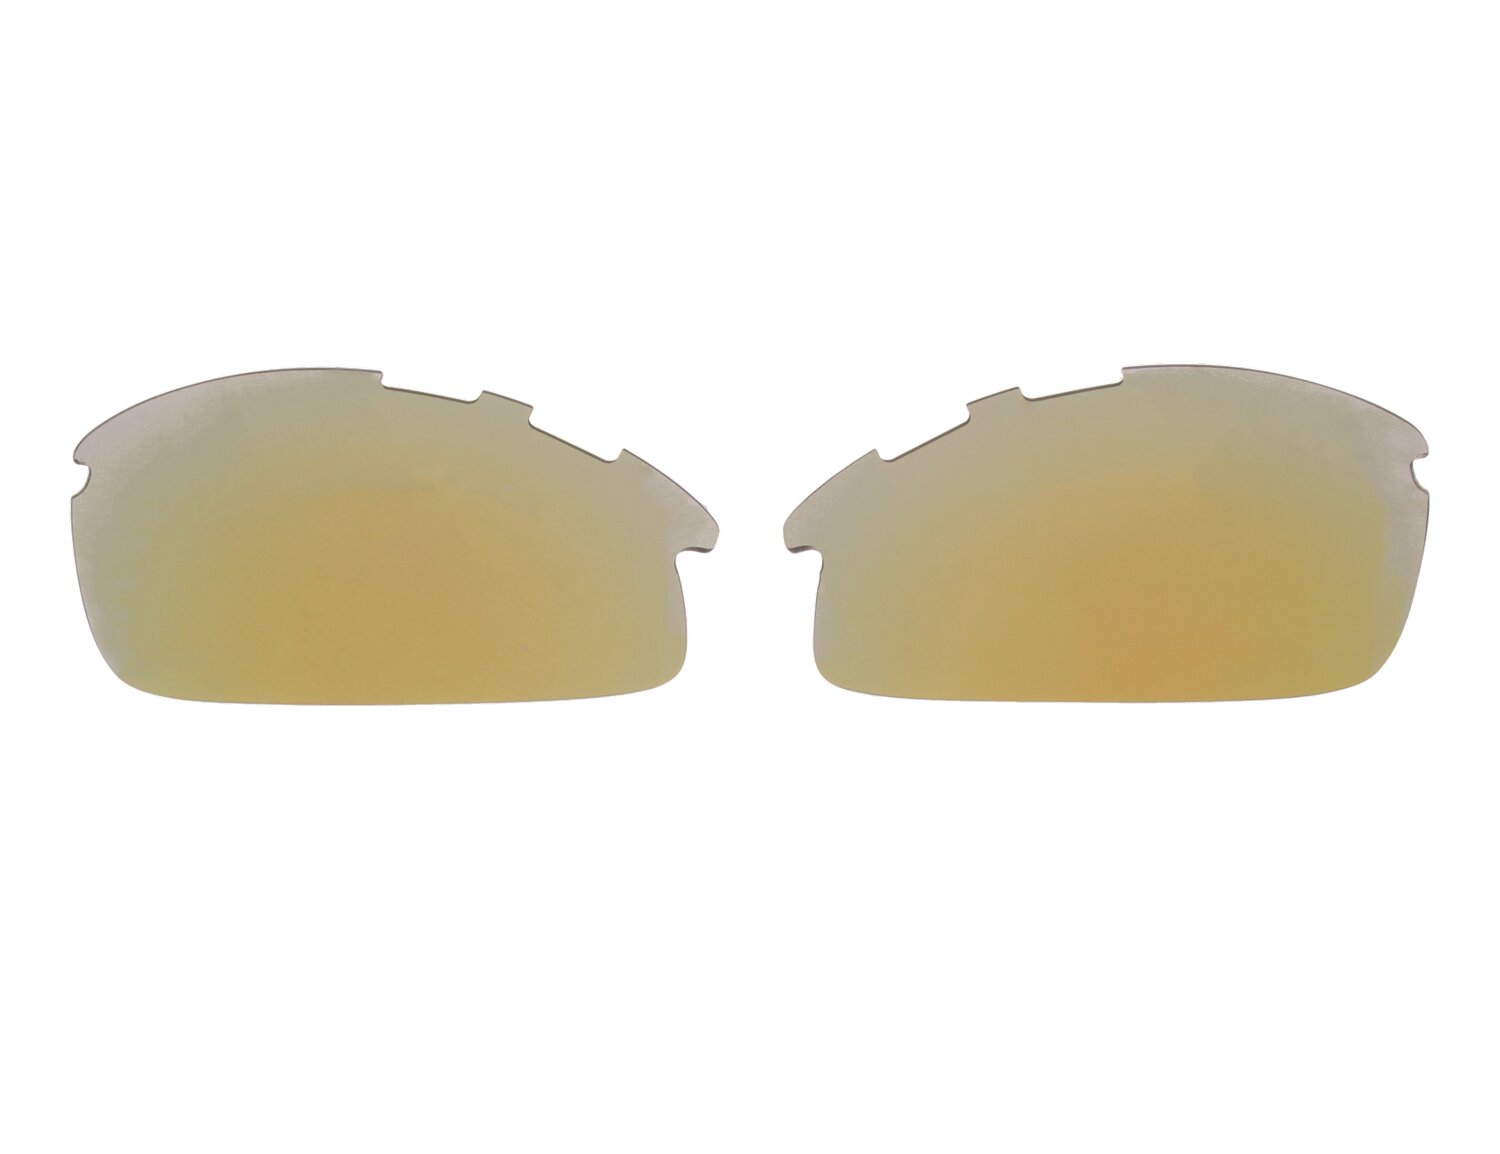 Soczewki wymienne do okularów DX-PRO